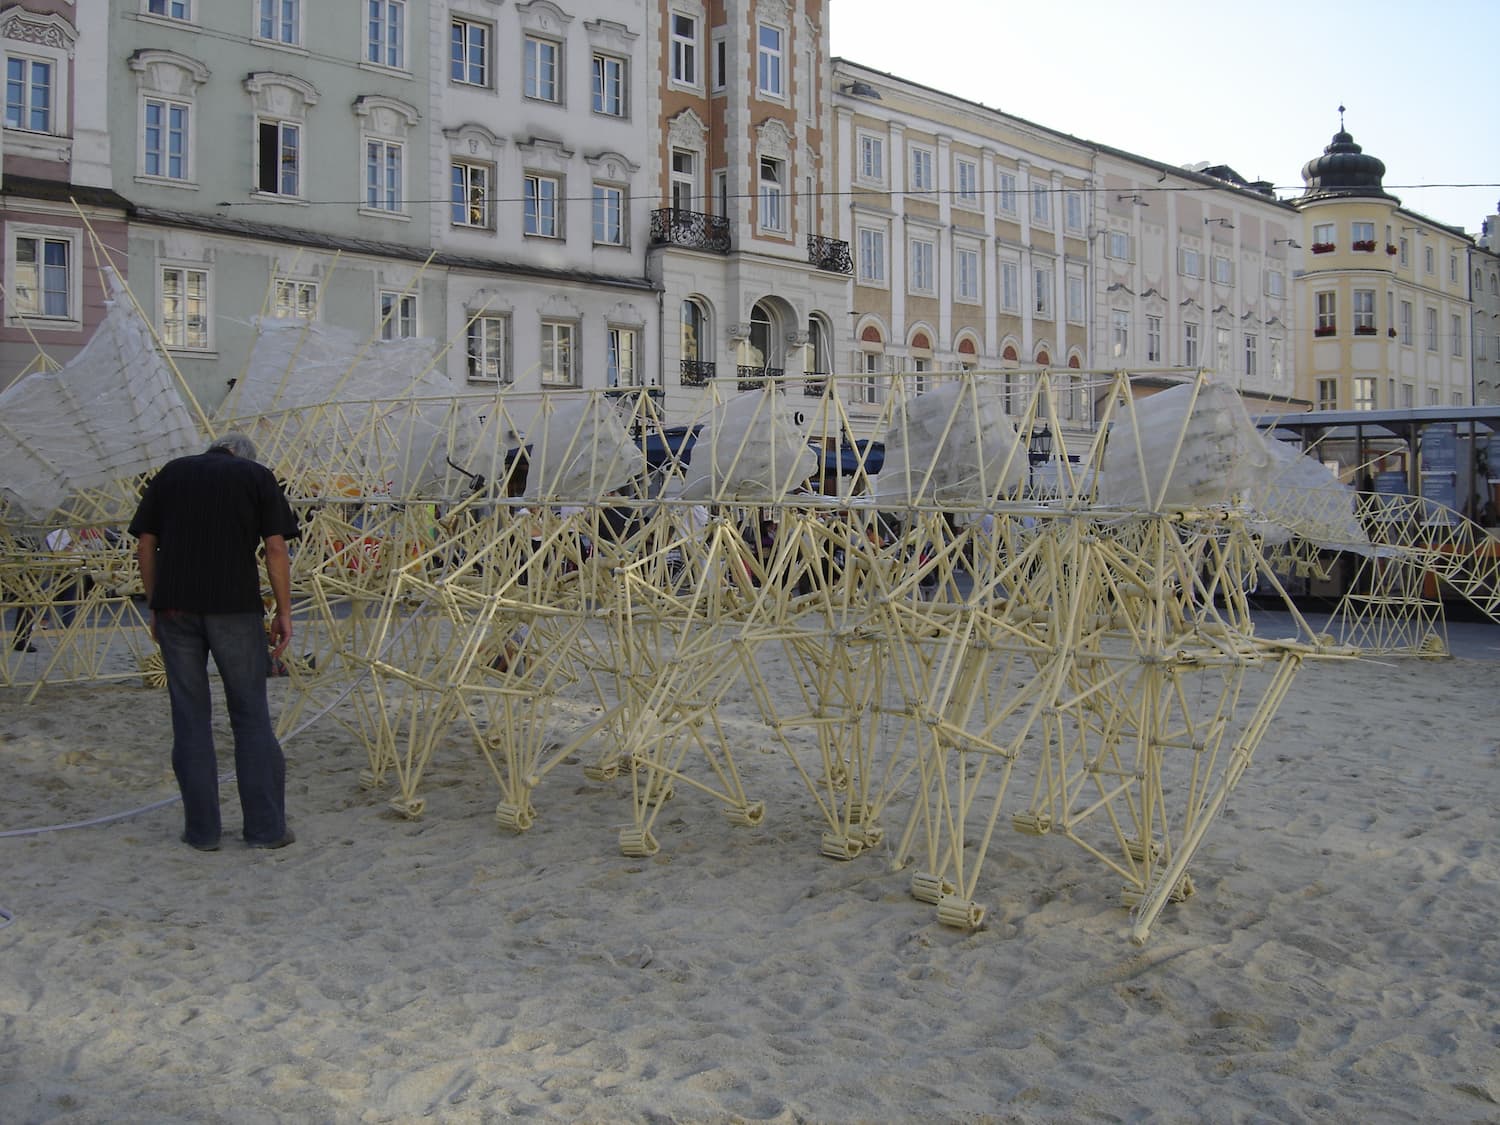 Jansens Arbeiten wurden während der Ars Electronica in Linz ausgestellt, in 2005. Fotos: Beredsamkeit, Gemeinfrei, über Wikimedia Commons.